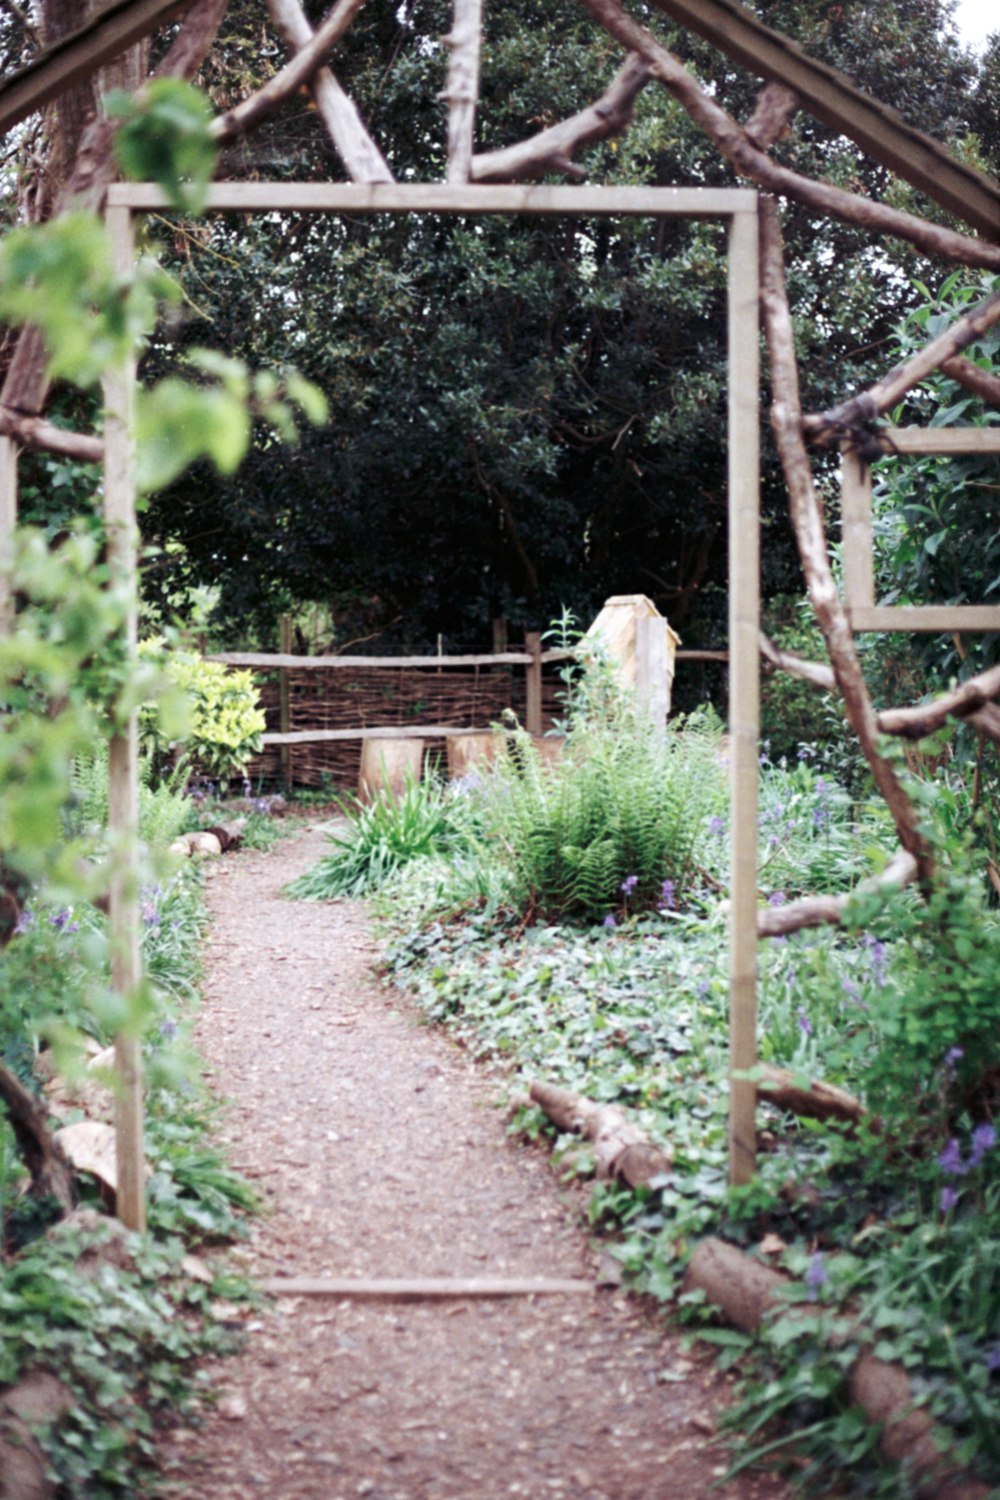 a garden with a path through it